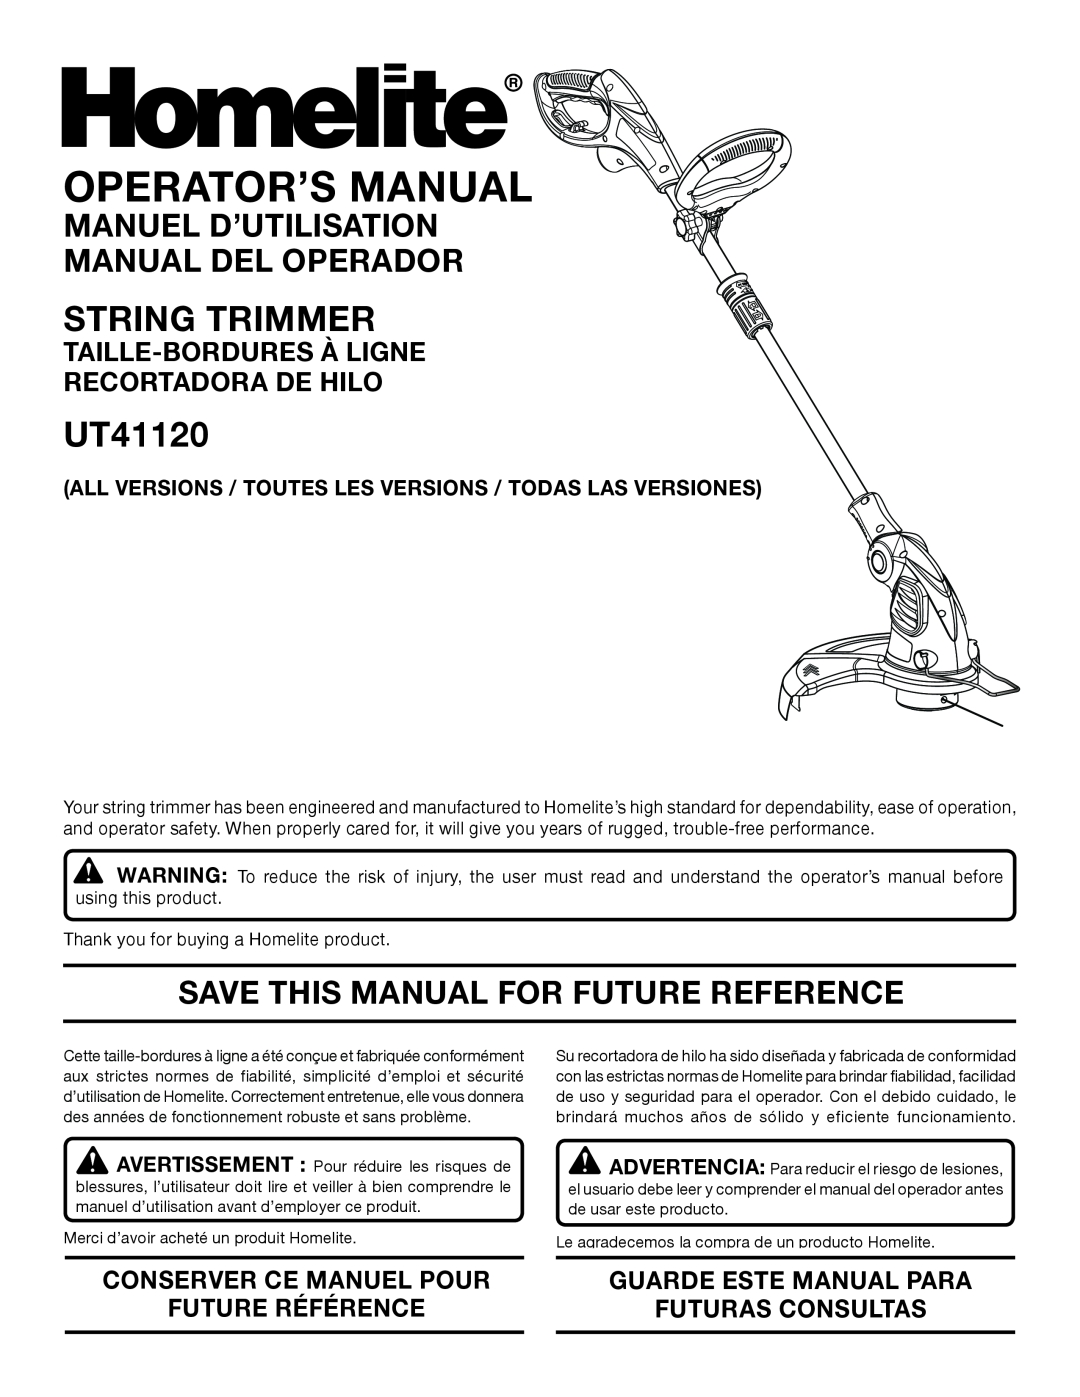 Homelite UT41120 manuel dutilisation String Trimmer, Manuel D’Utilisation Manual Del Operador, Operator’S Manual 